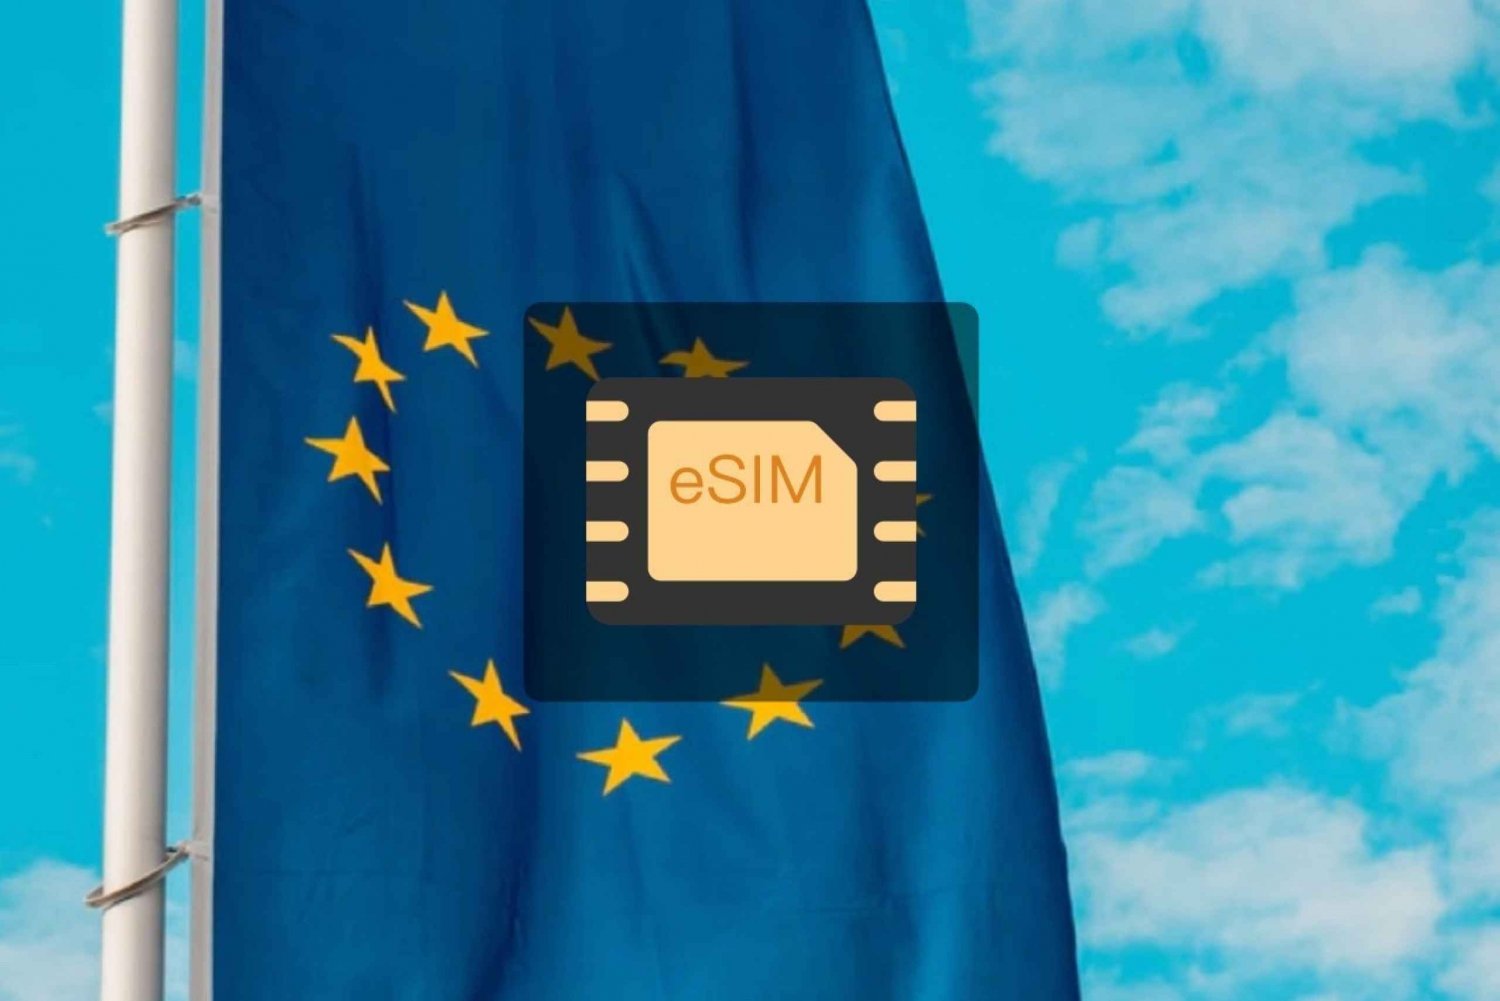 Storbritannien/Europa: eSim mobildataabonnement